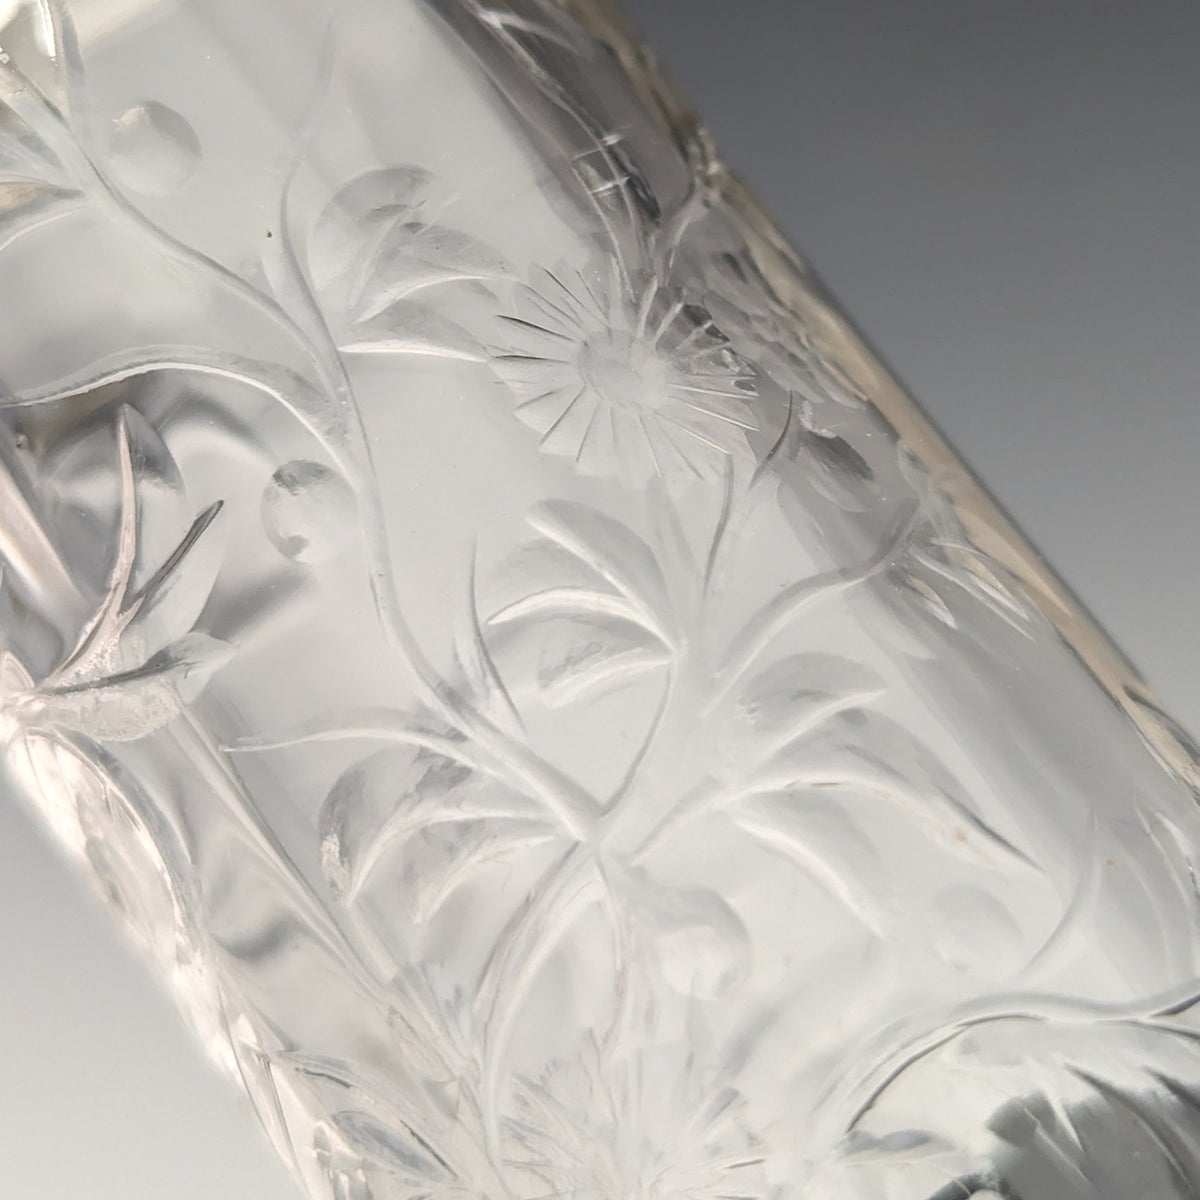 1901年 英国アンティーク 純銀装飾 エッチンググラス 花瓶 Johnson